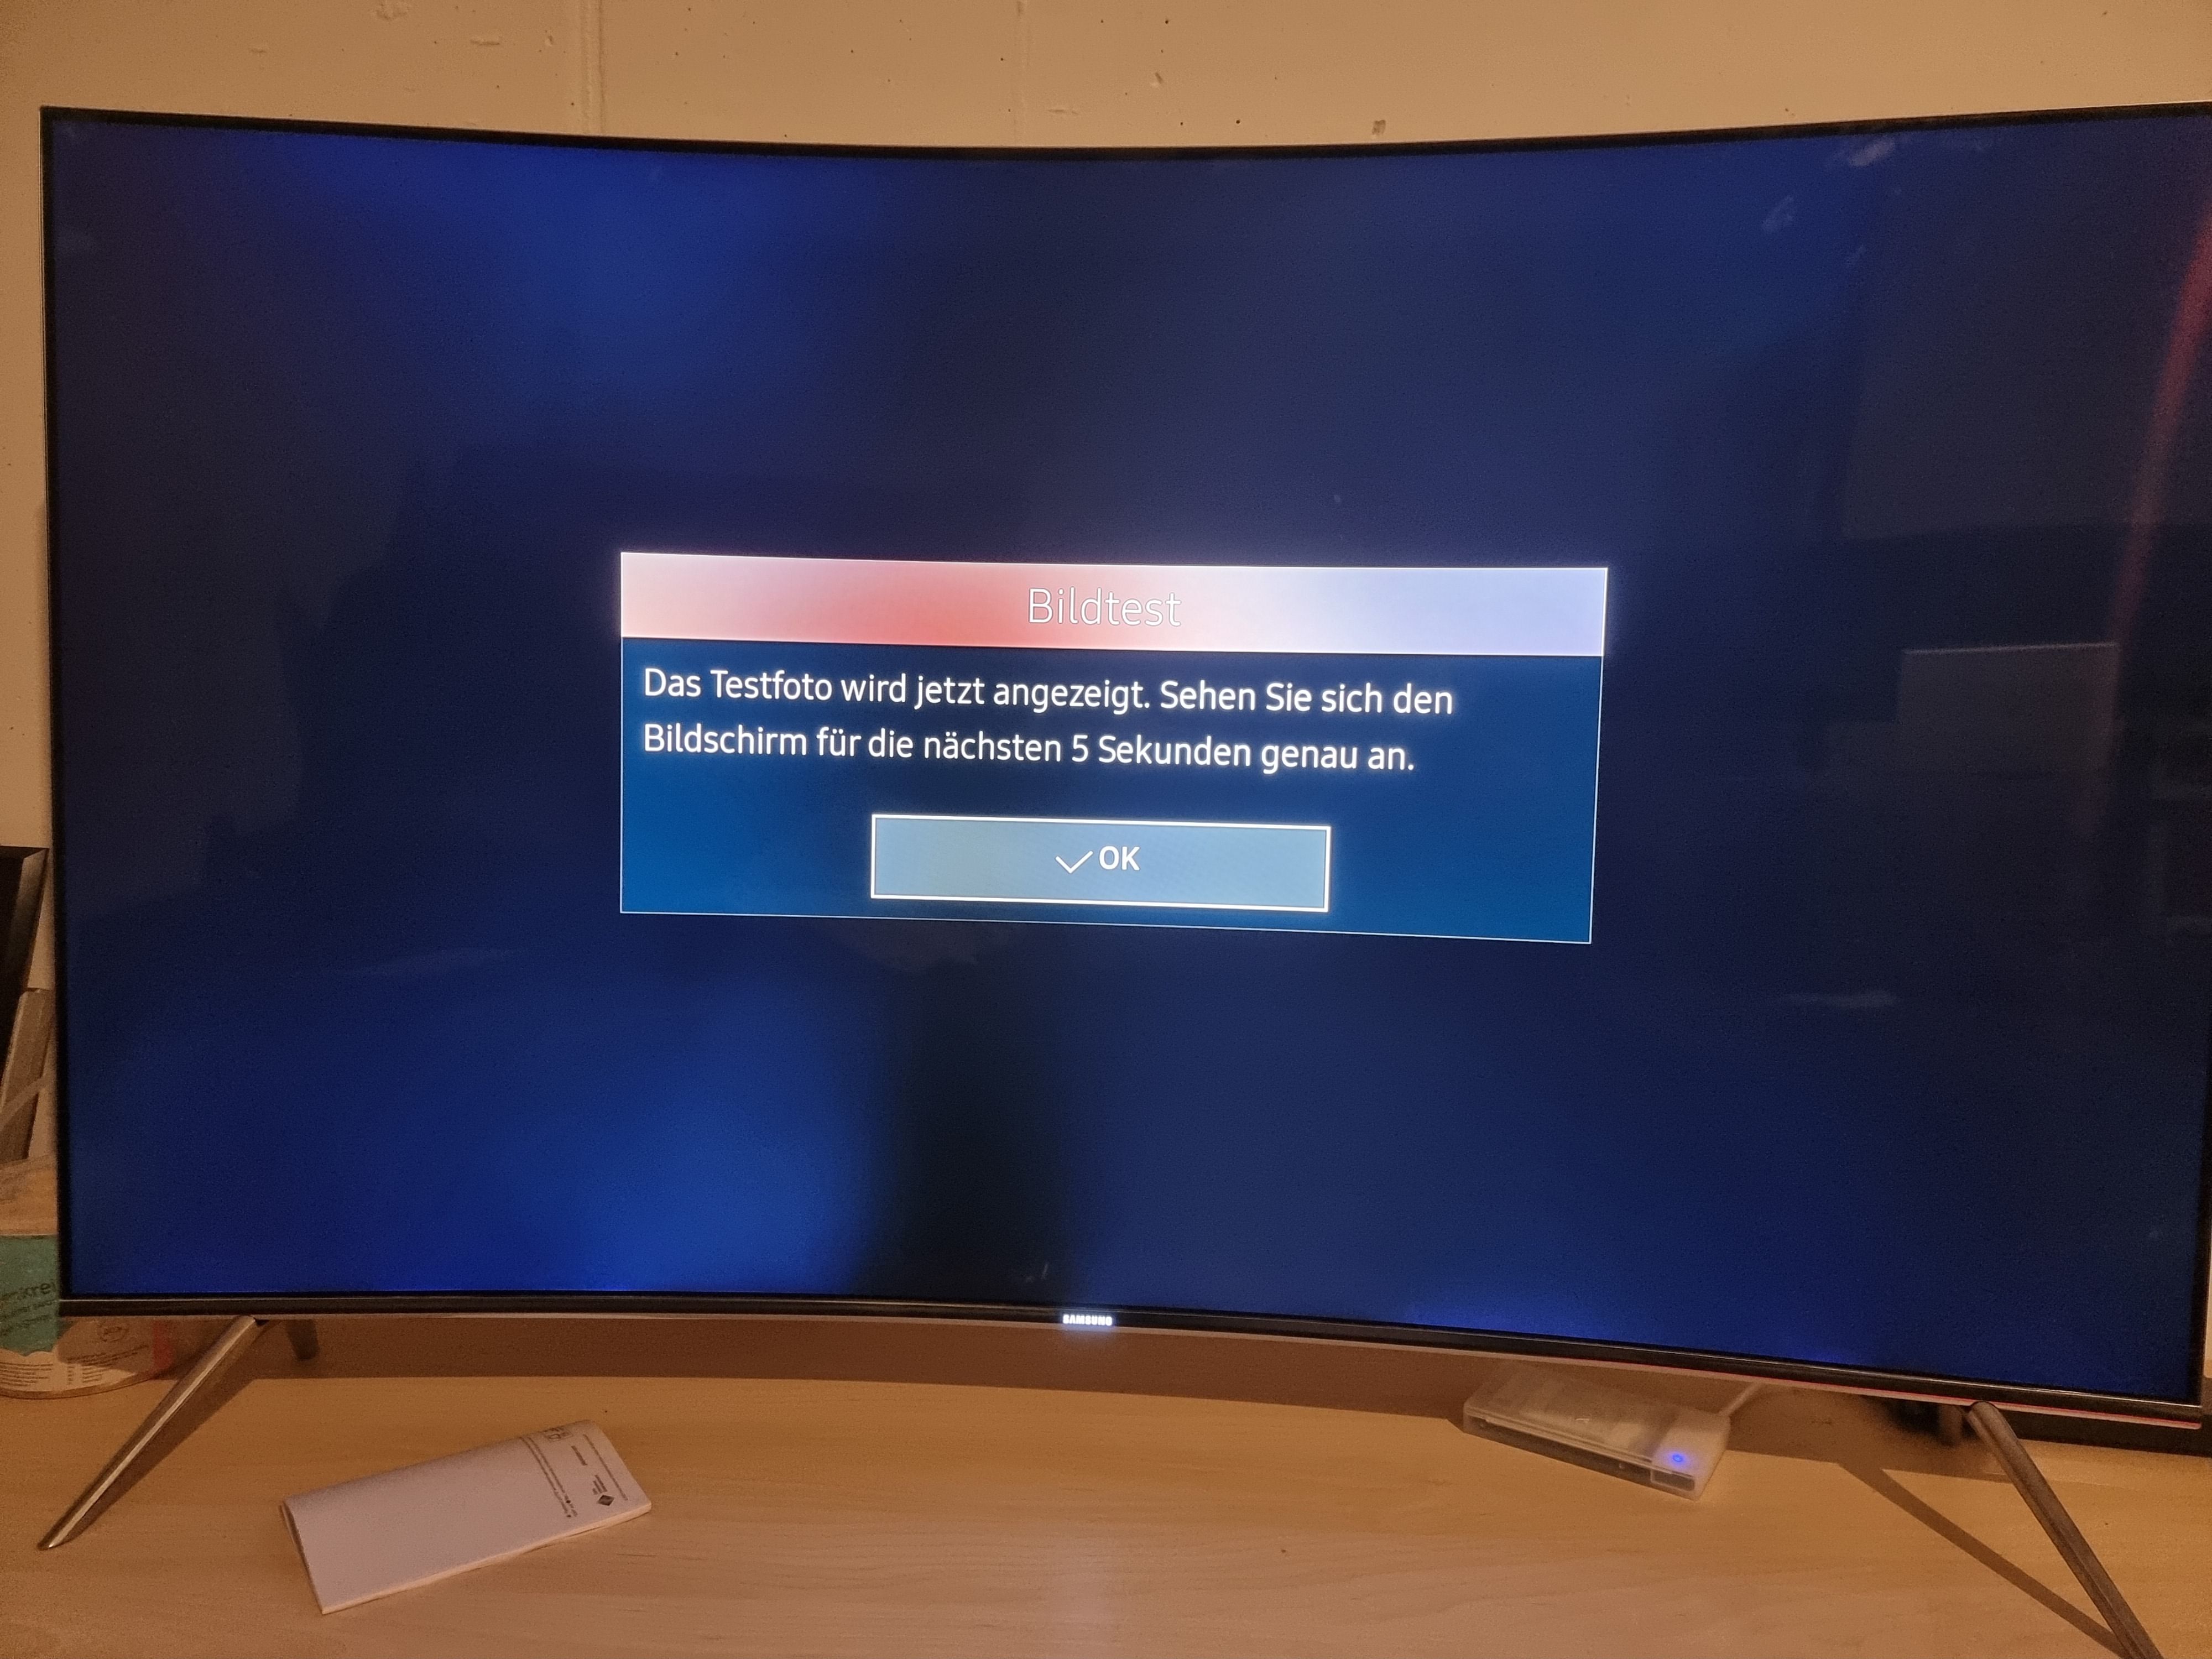 Probleme mit der Hintergrundbeleuchtung Samsung TV UE49KS7580U curved -  Samsung Community